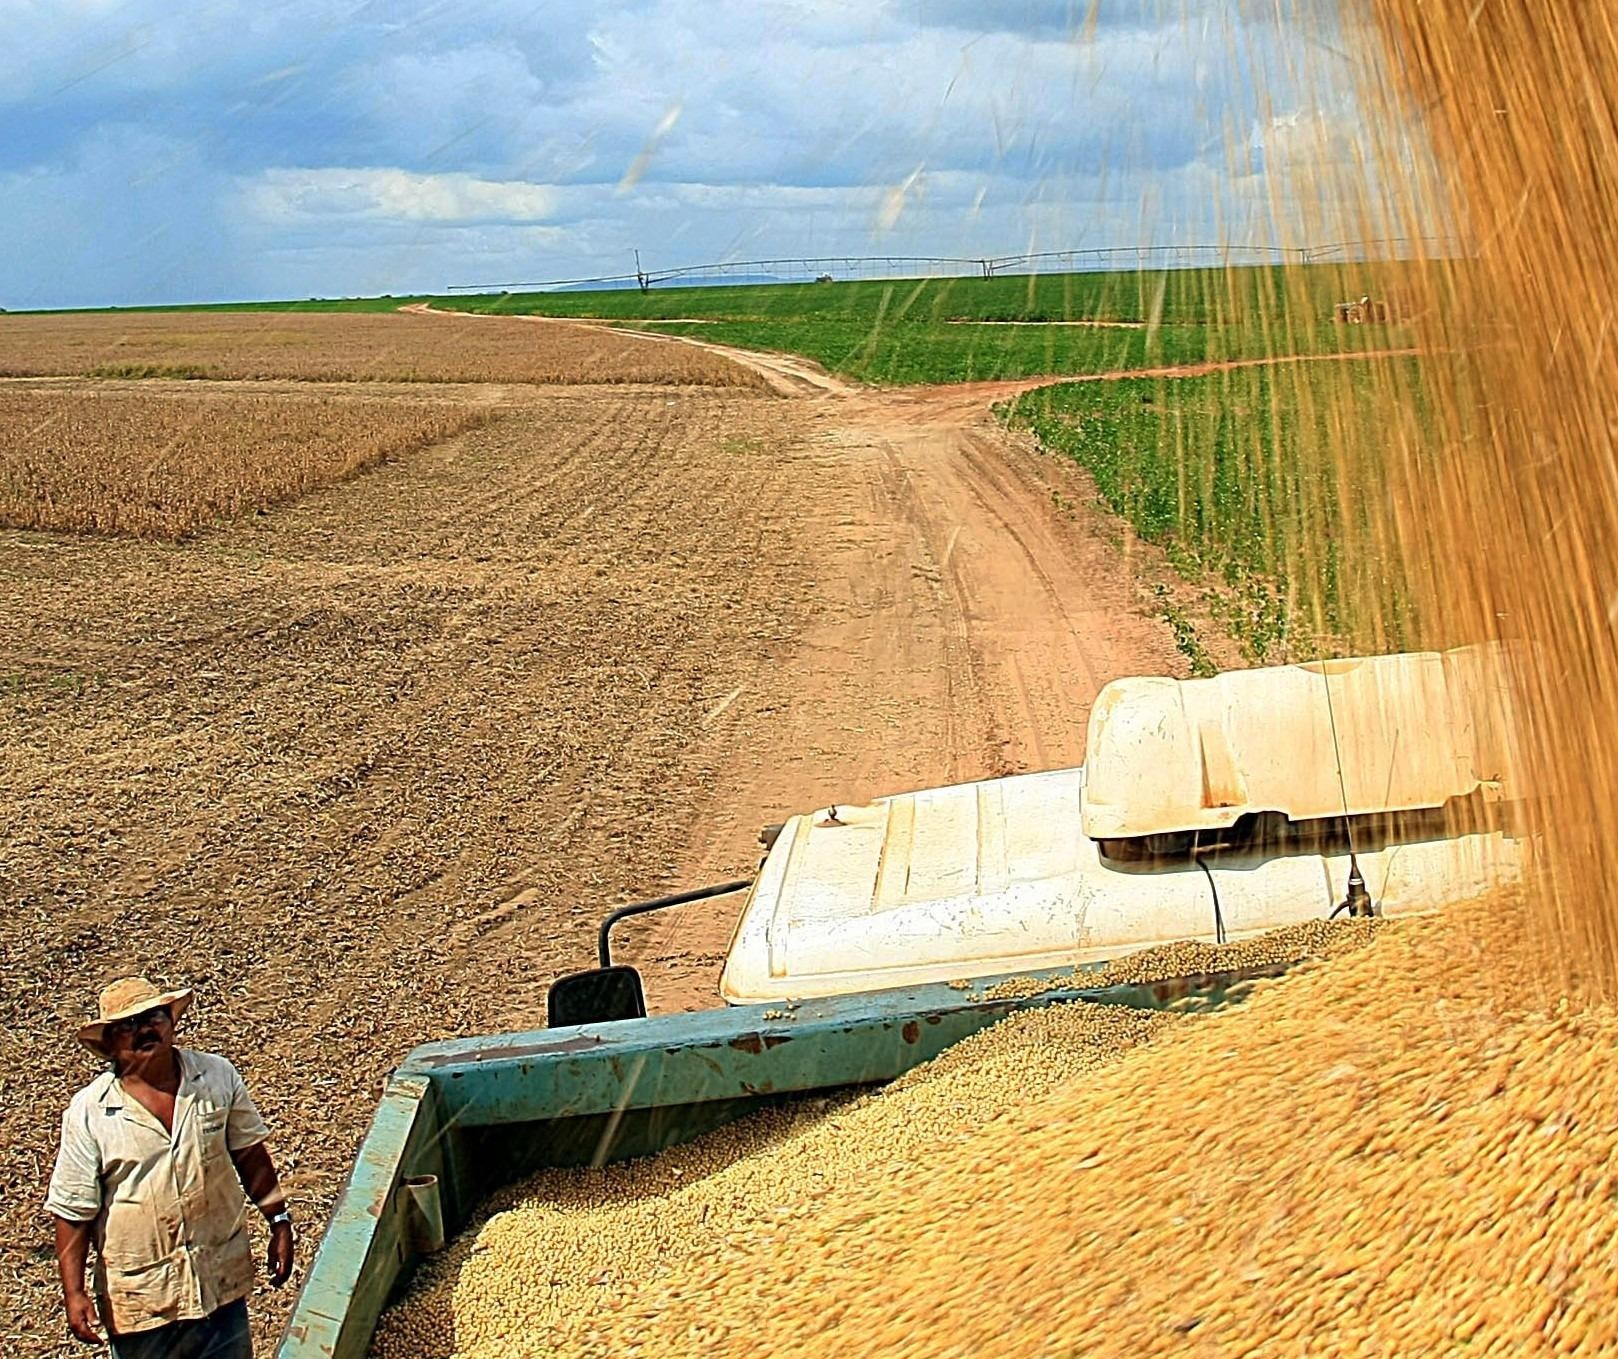 Atividade agropecuária teve redução de rentabilidade, avalia CNA